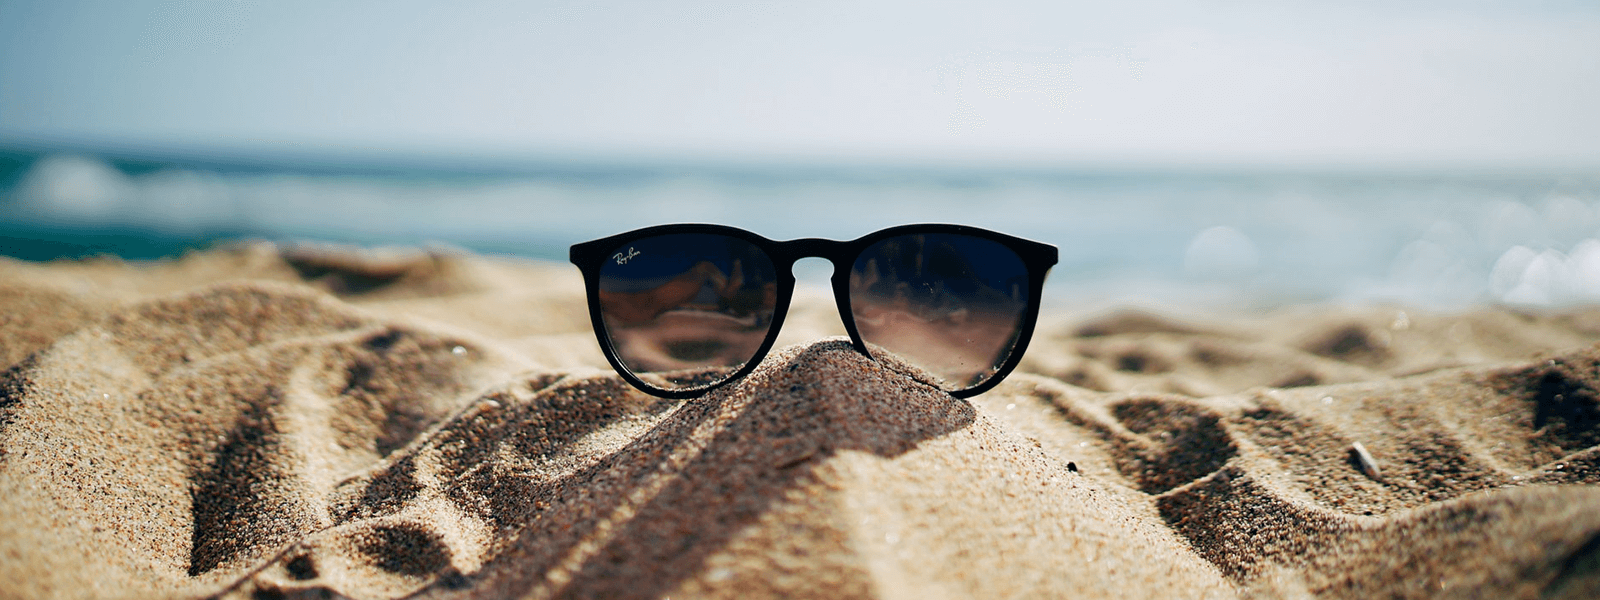 okulary przeciwsłoneczne leżące na piasku nad morzem